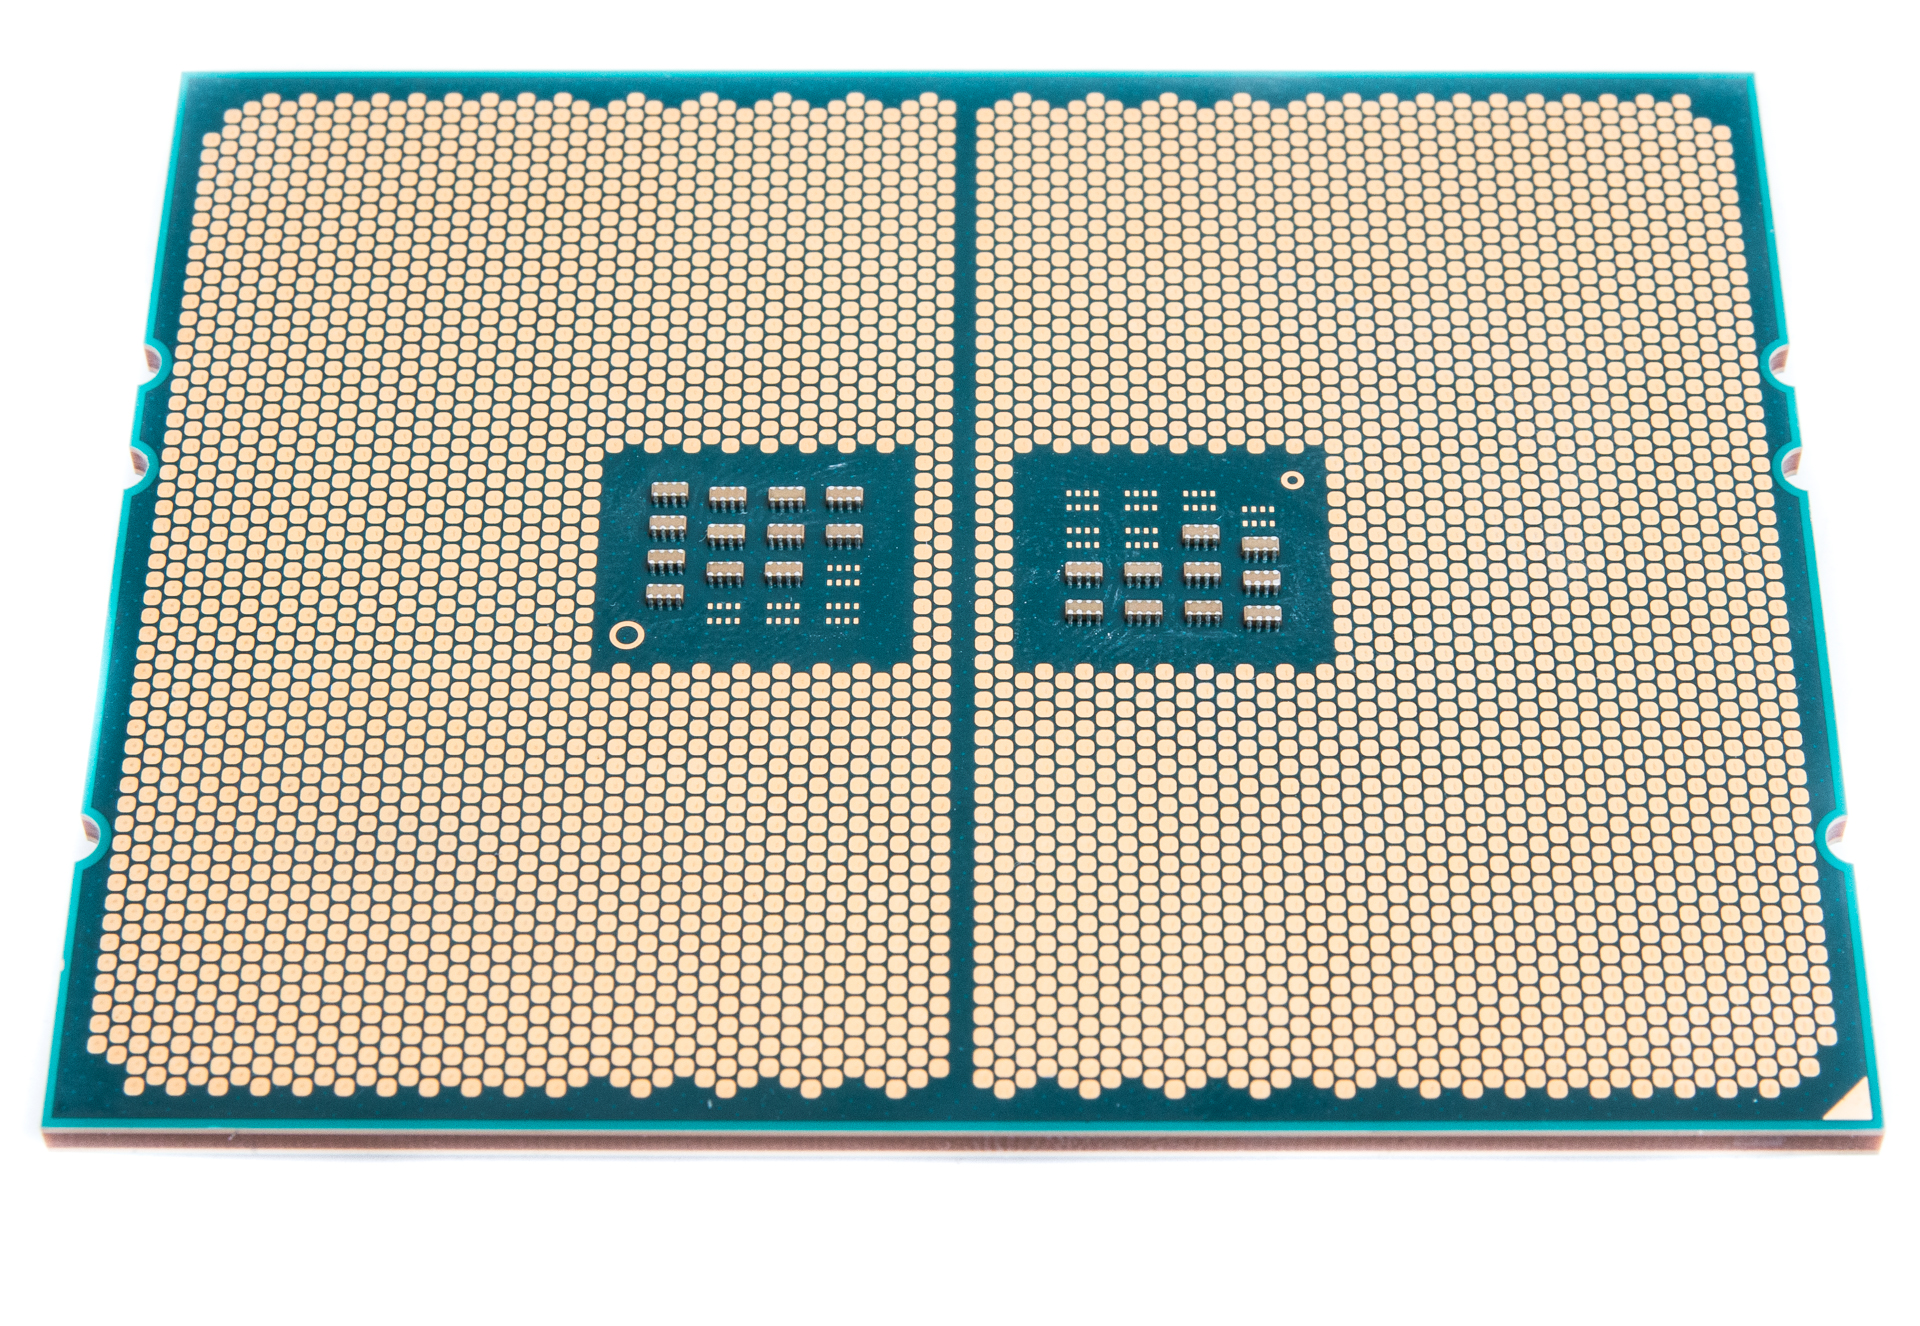 AMD Ryzen Threadripper 1950X Processor 3.4GHz CPU 16-Core Socket